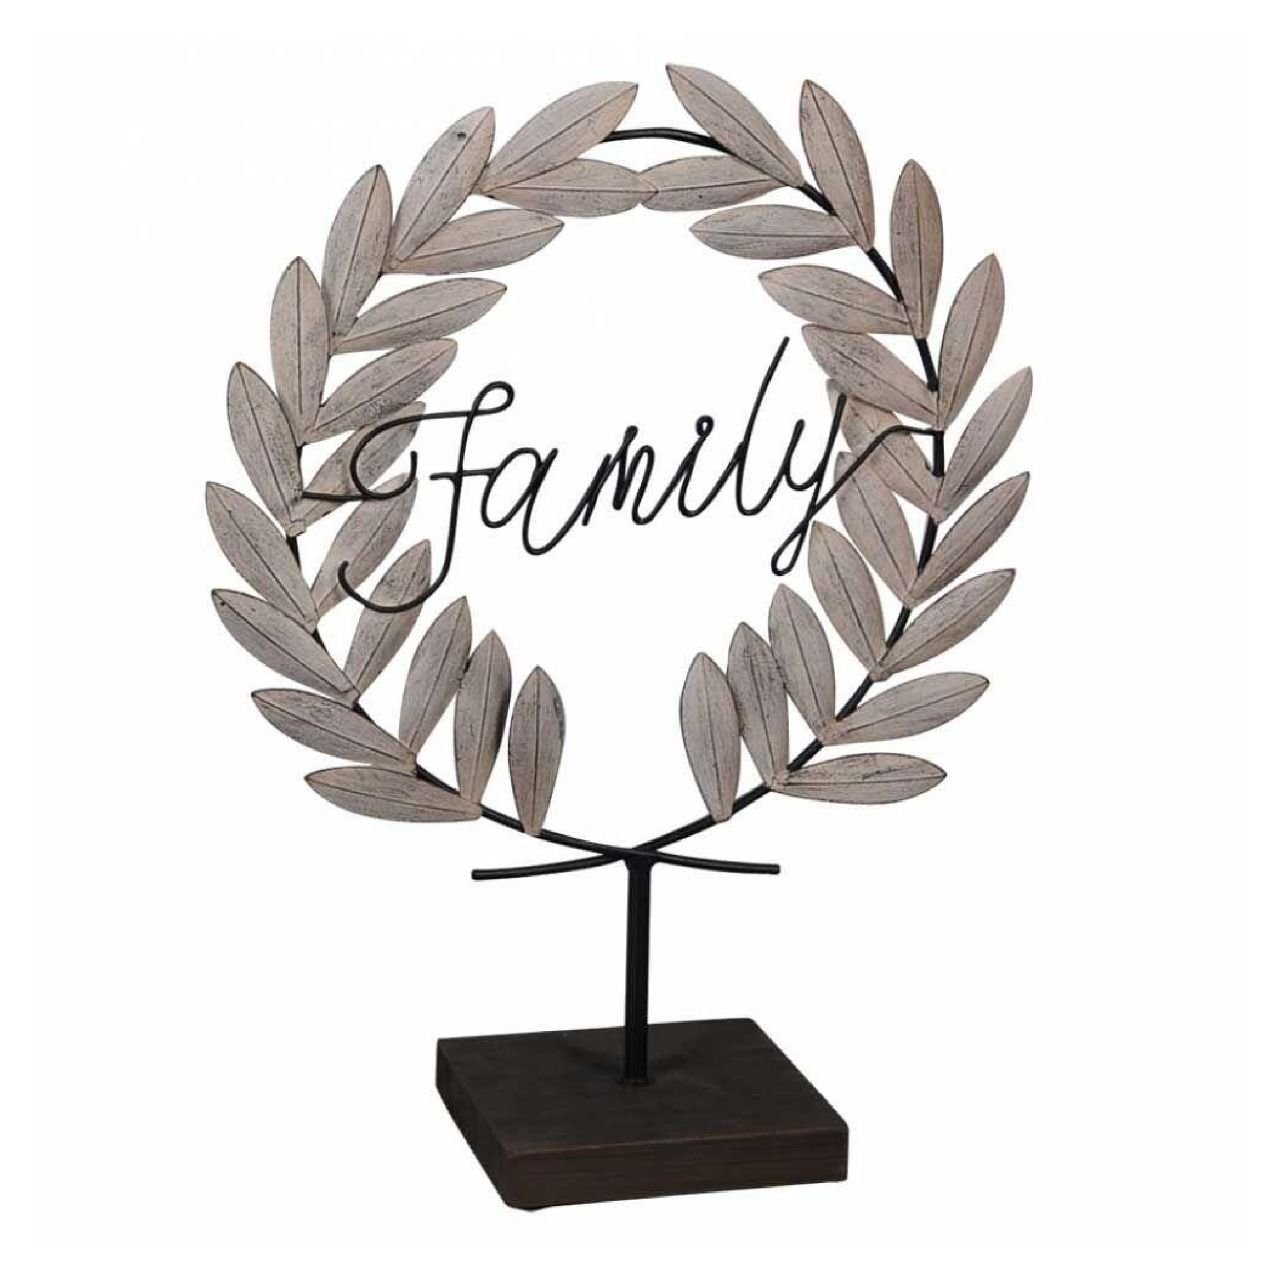 Placa Decorativa em Metal Family (Família) 47x37cm - 1